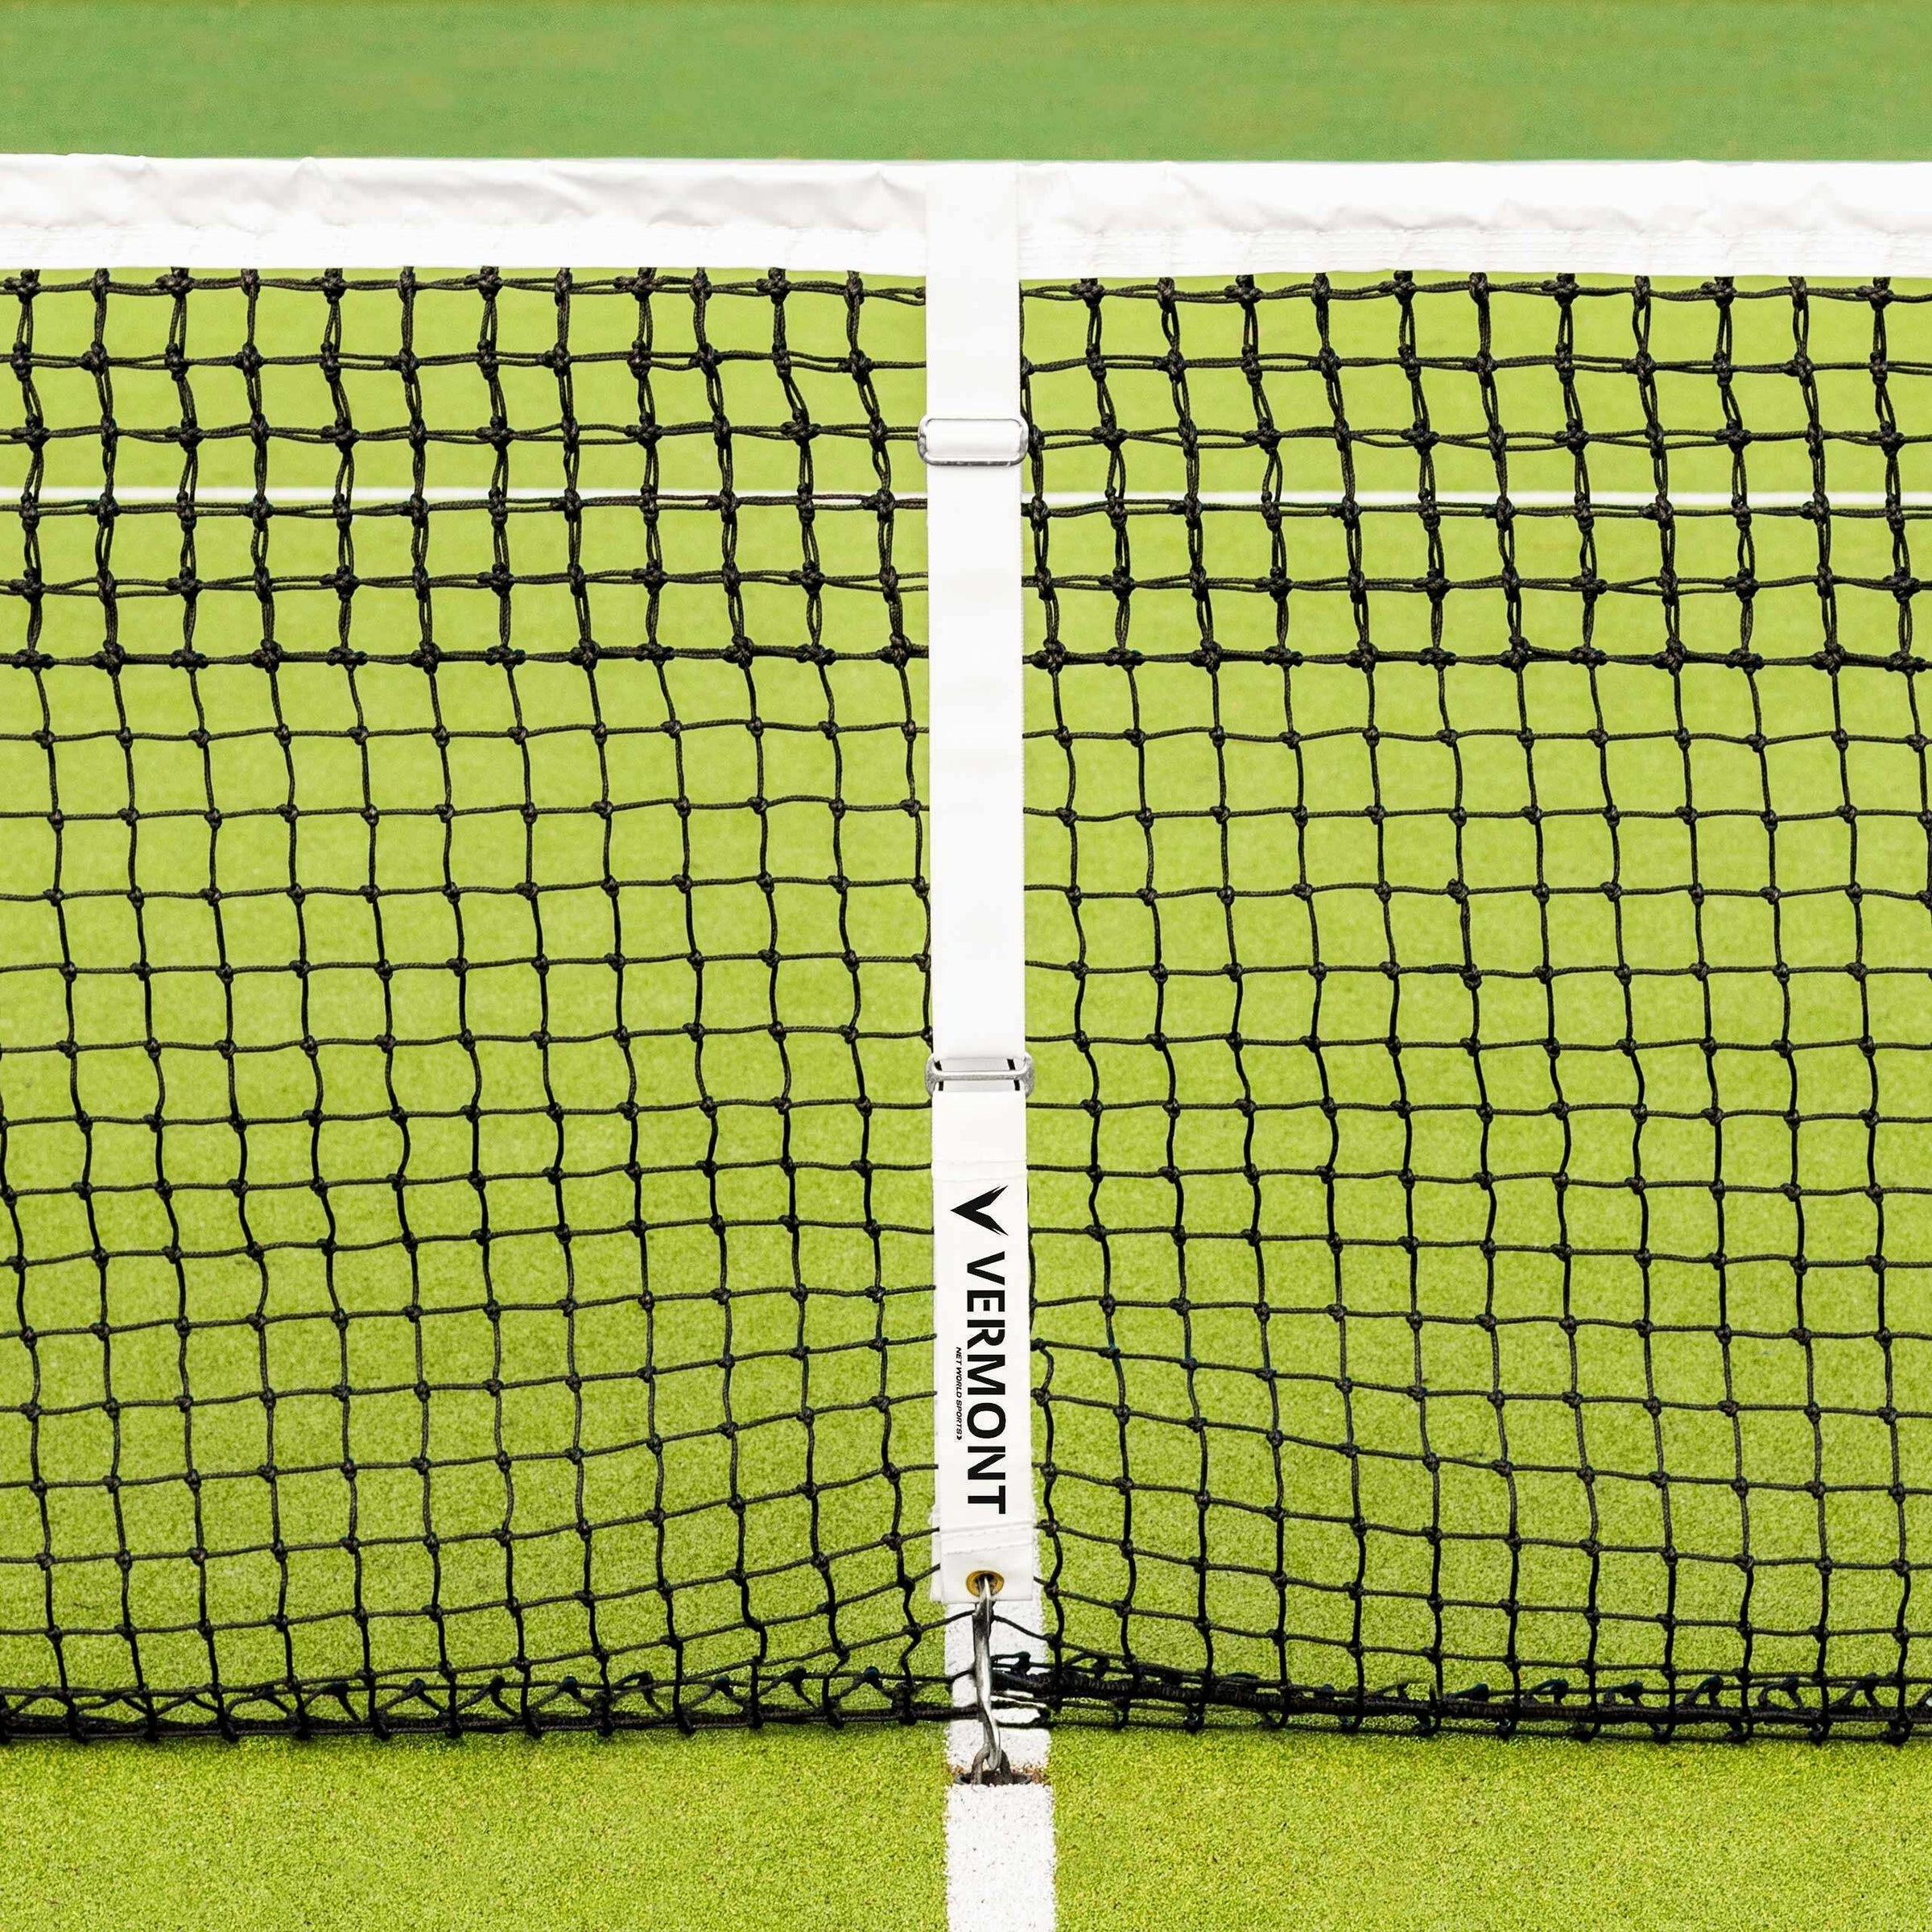 Polyester Tennis Net Center Tie Down Strap (#502111)